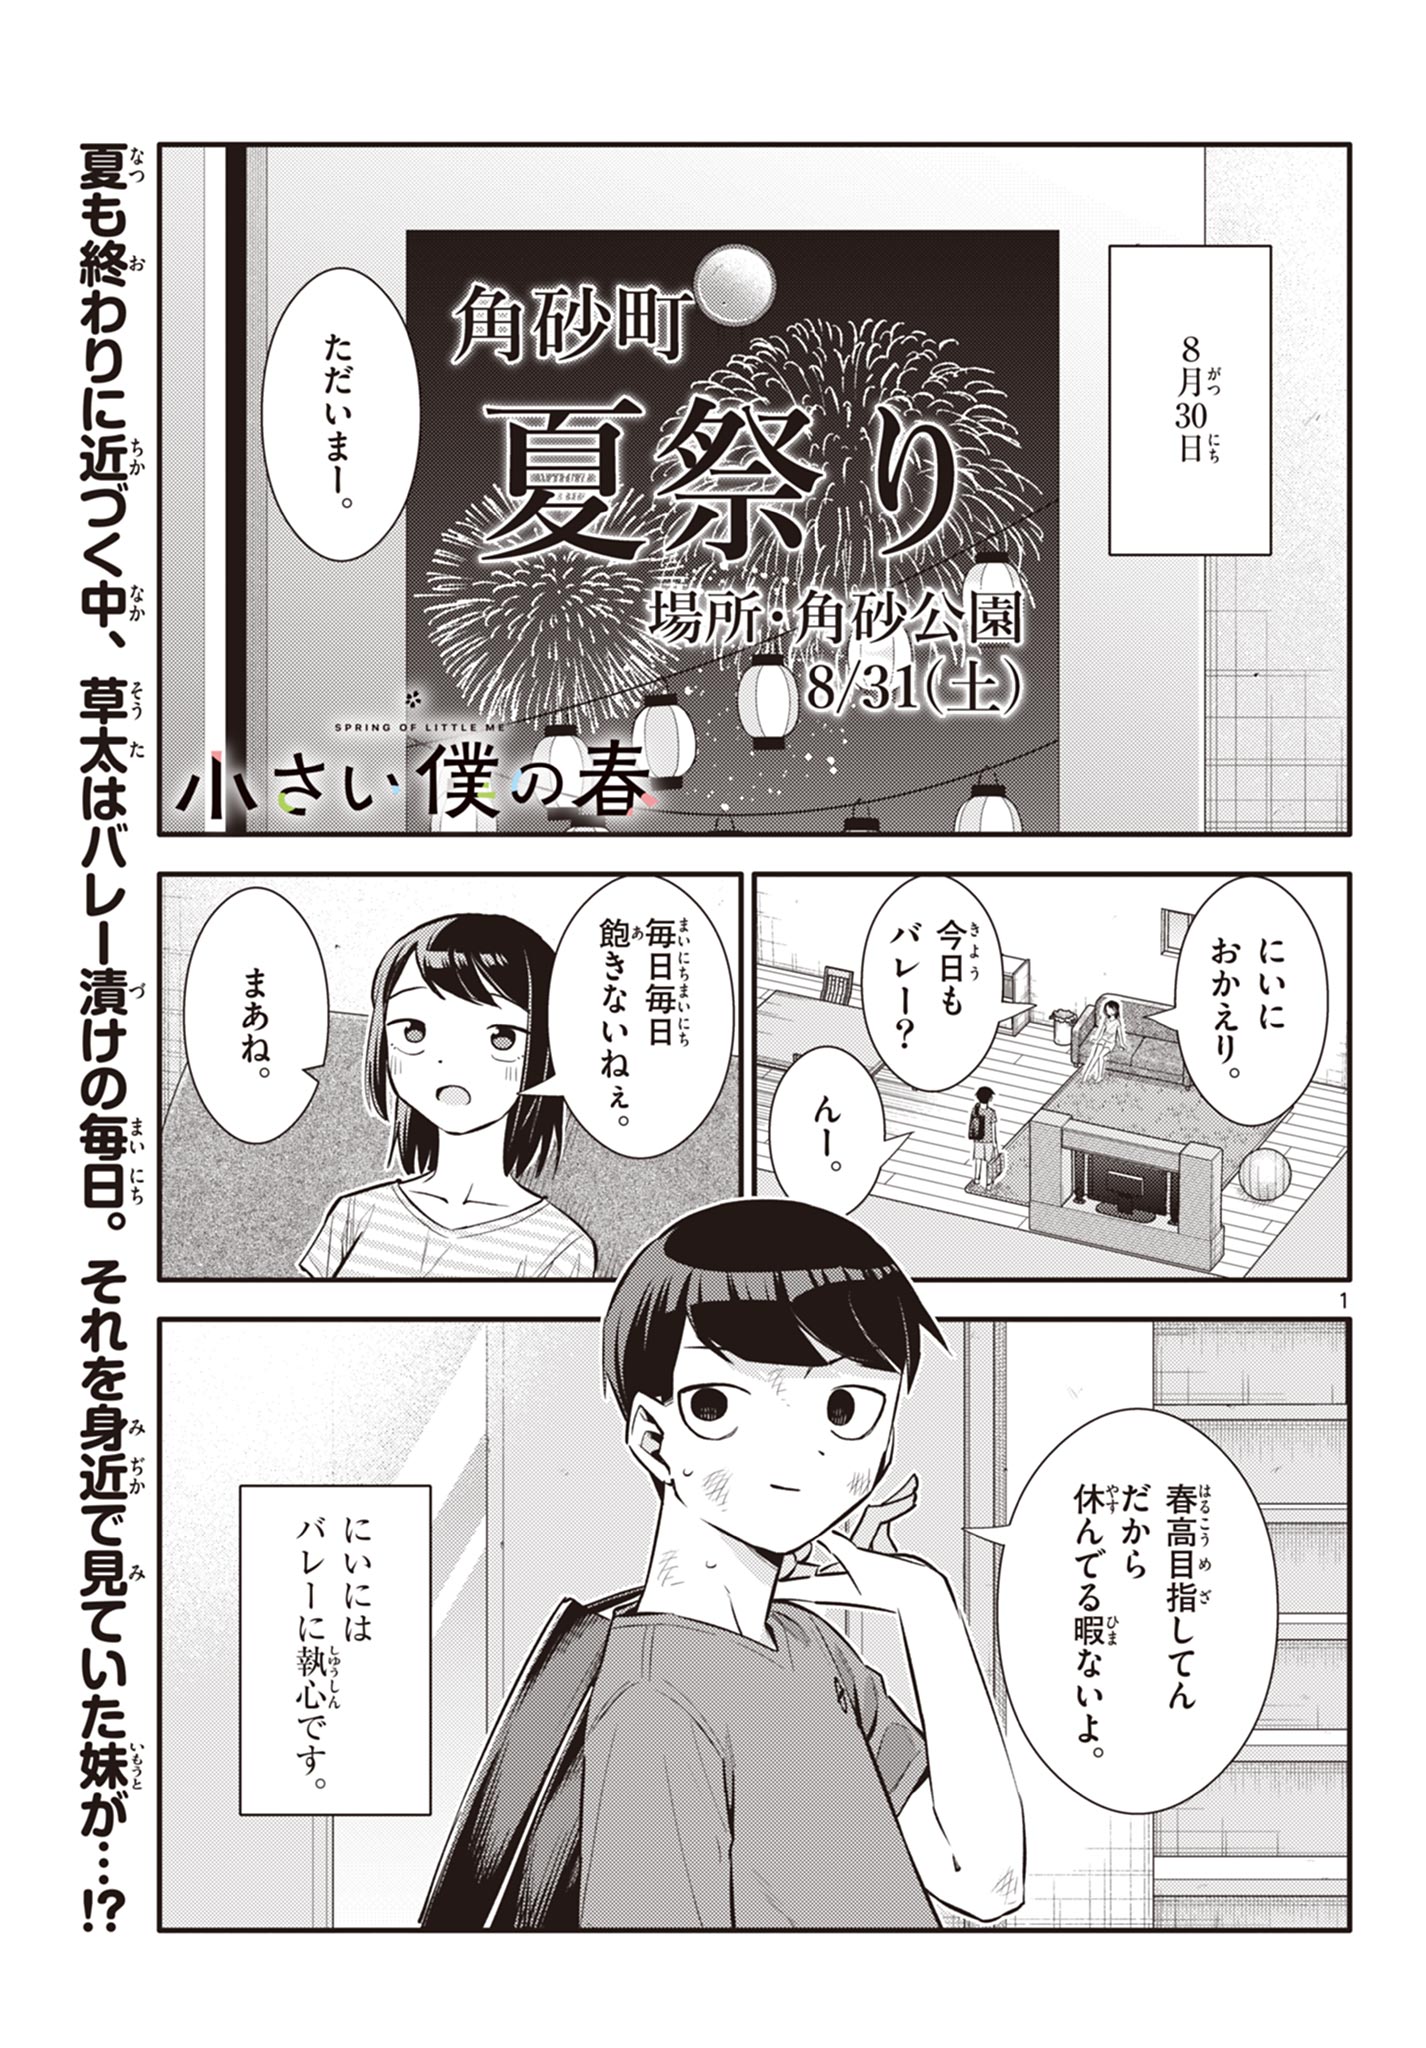 Chiisai Boku no Haru - Chapter 24 - Page 1